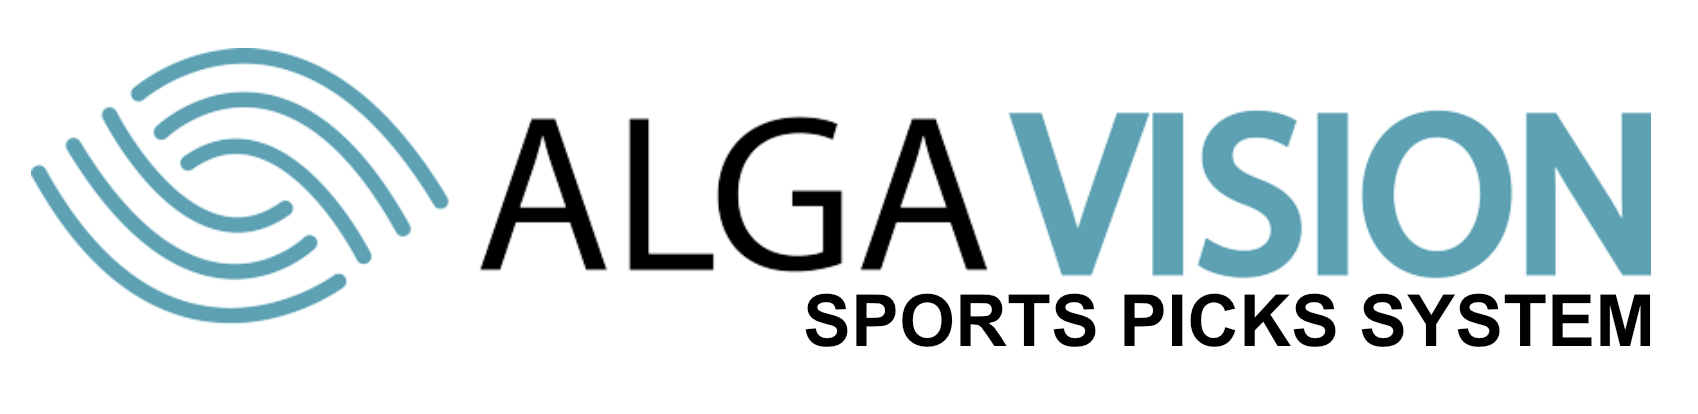 AlgaVision-SportsPicksSystem